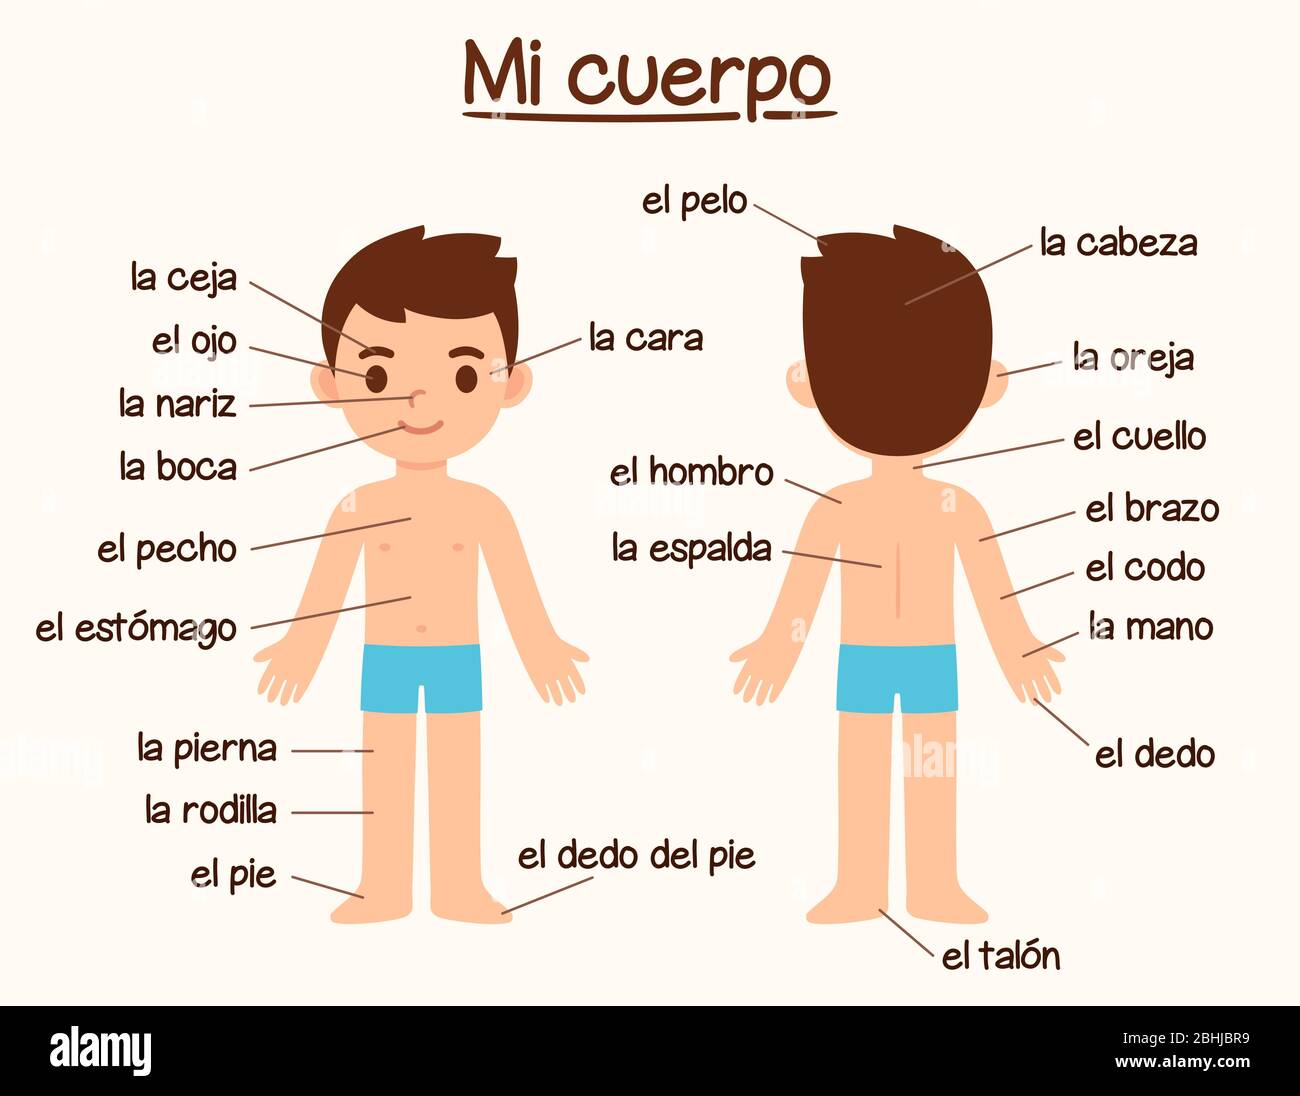 Mi Cuerpo (Mein Körper), Diagramm der menschlichen Körperteile in Spanisch für das Sprachenlernen. Nette Cartoon Junge mit Etiketten, Infografik Diagramm für Kinder. Stock Vektor